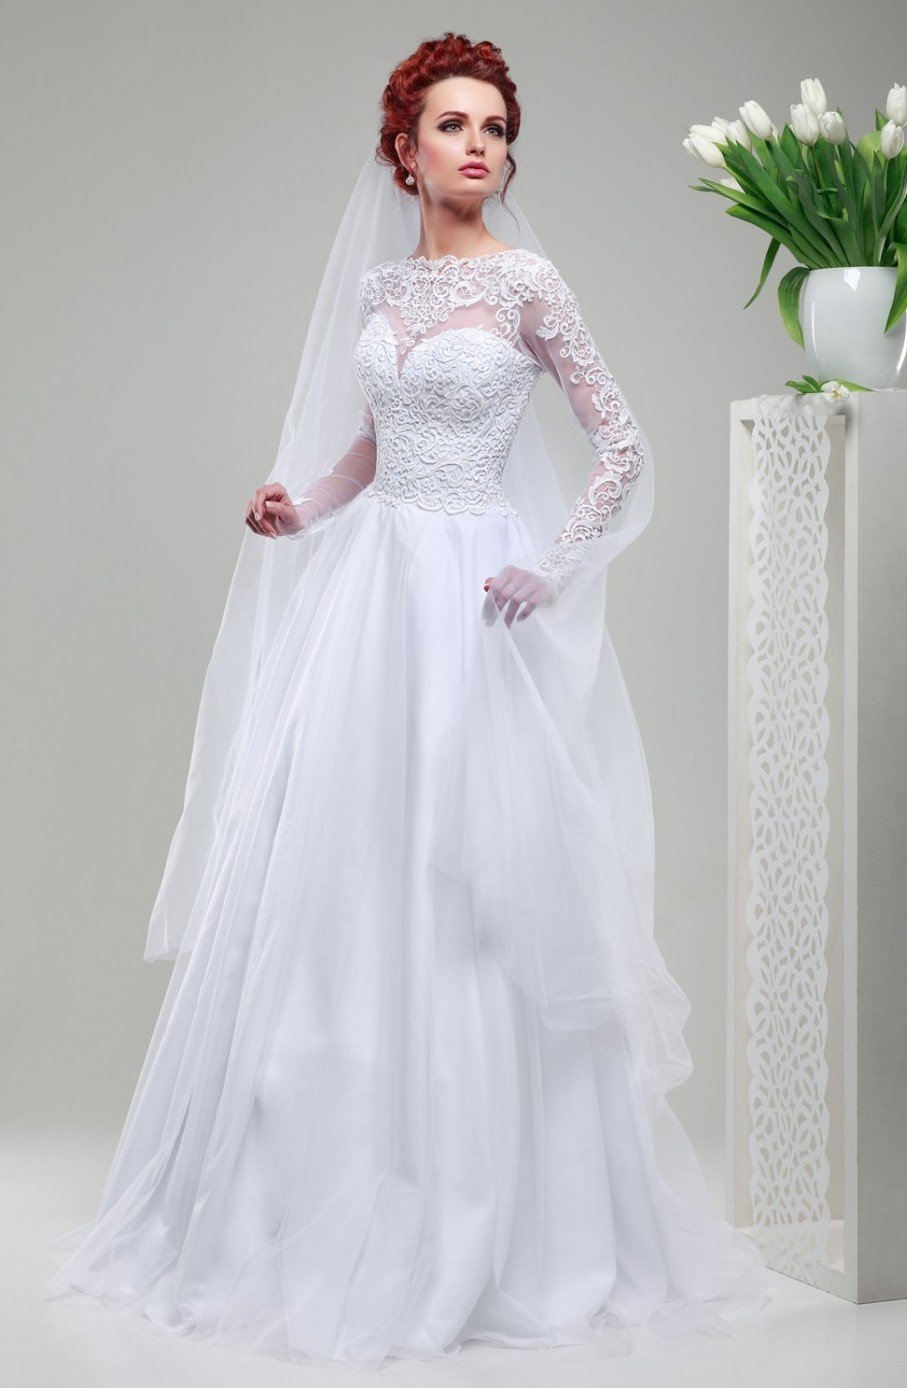 Свадебное платье из коллекции 2015 года Lileya "Ажурные цветы"В наличие цвет айвори размер регулируется от 42 до 46.